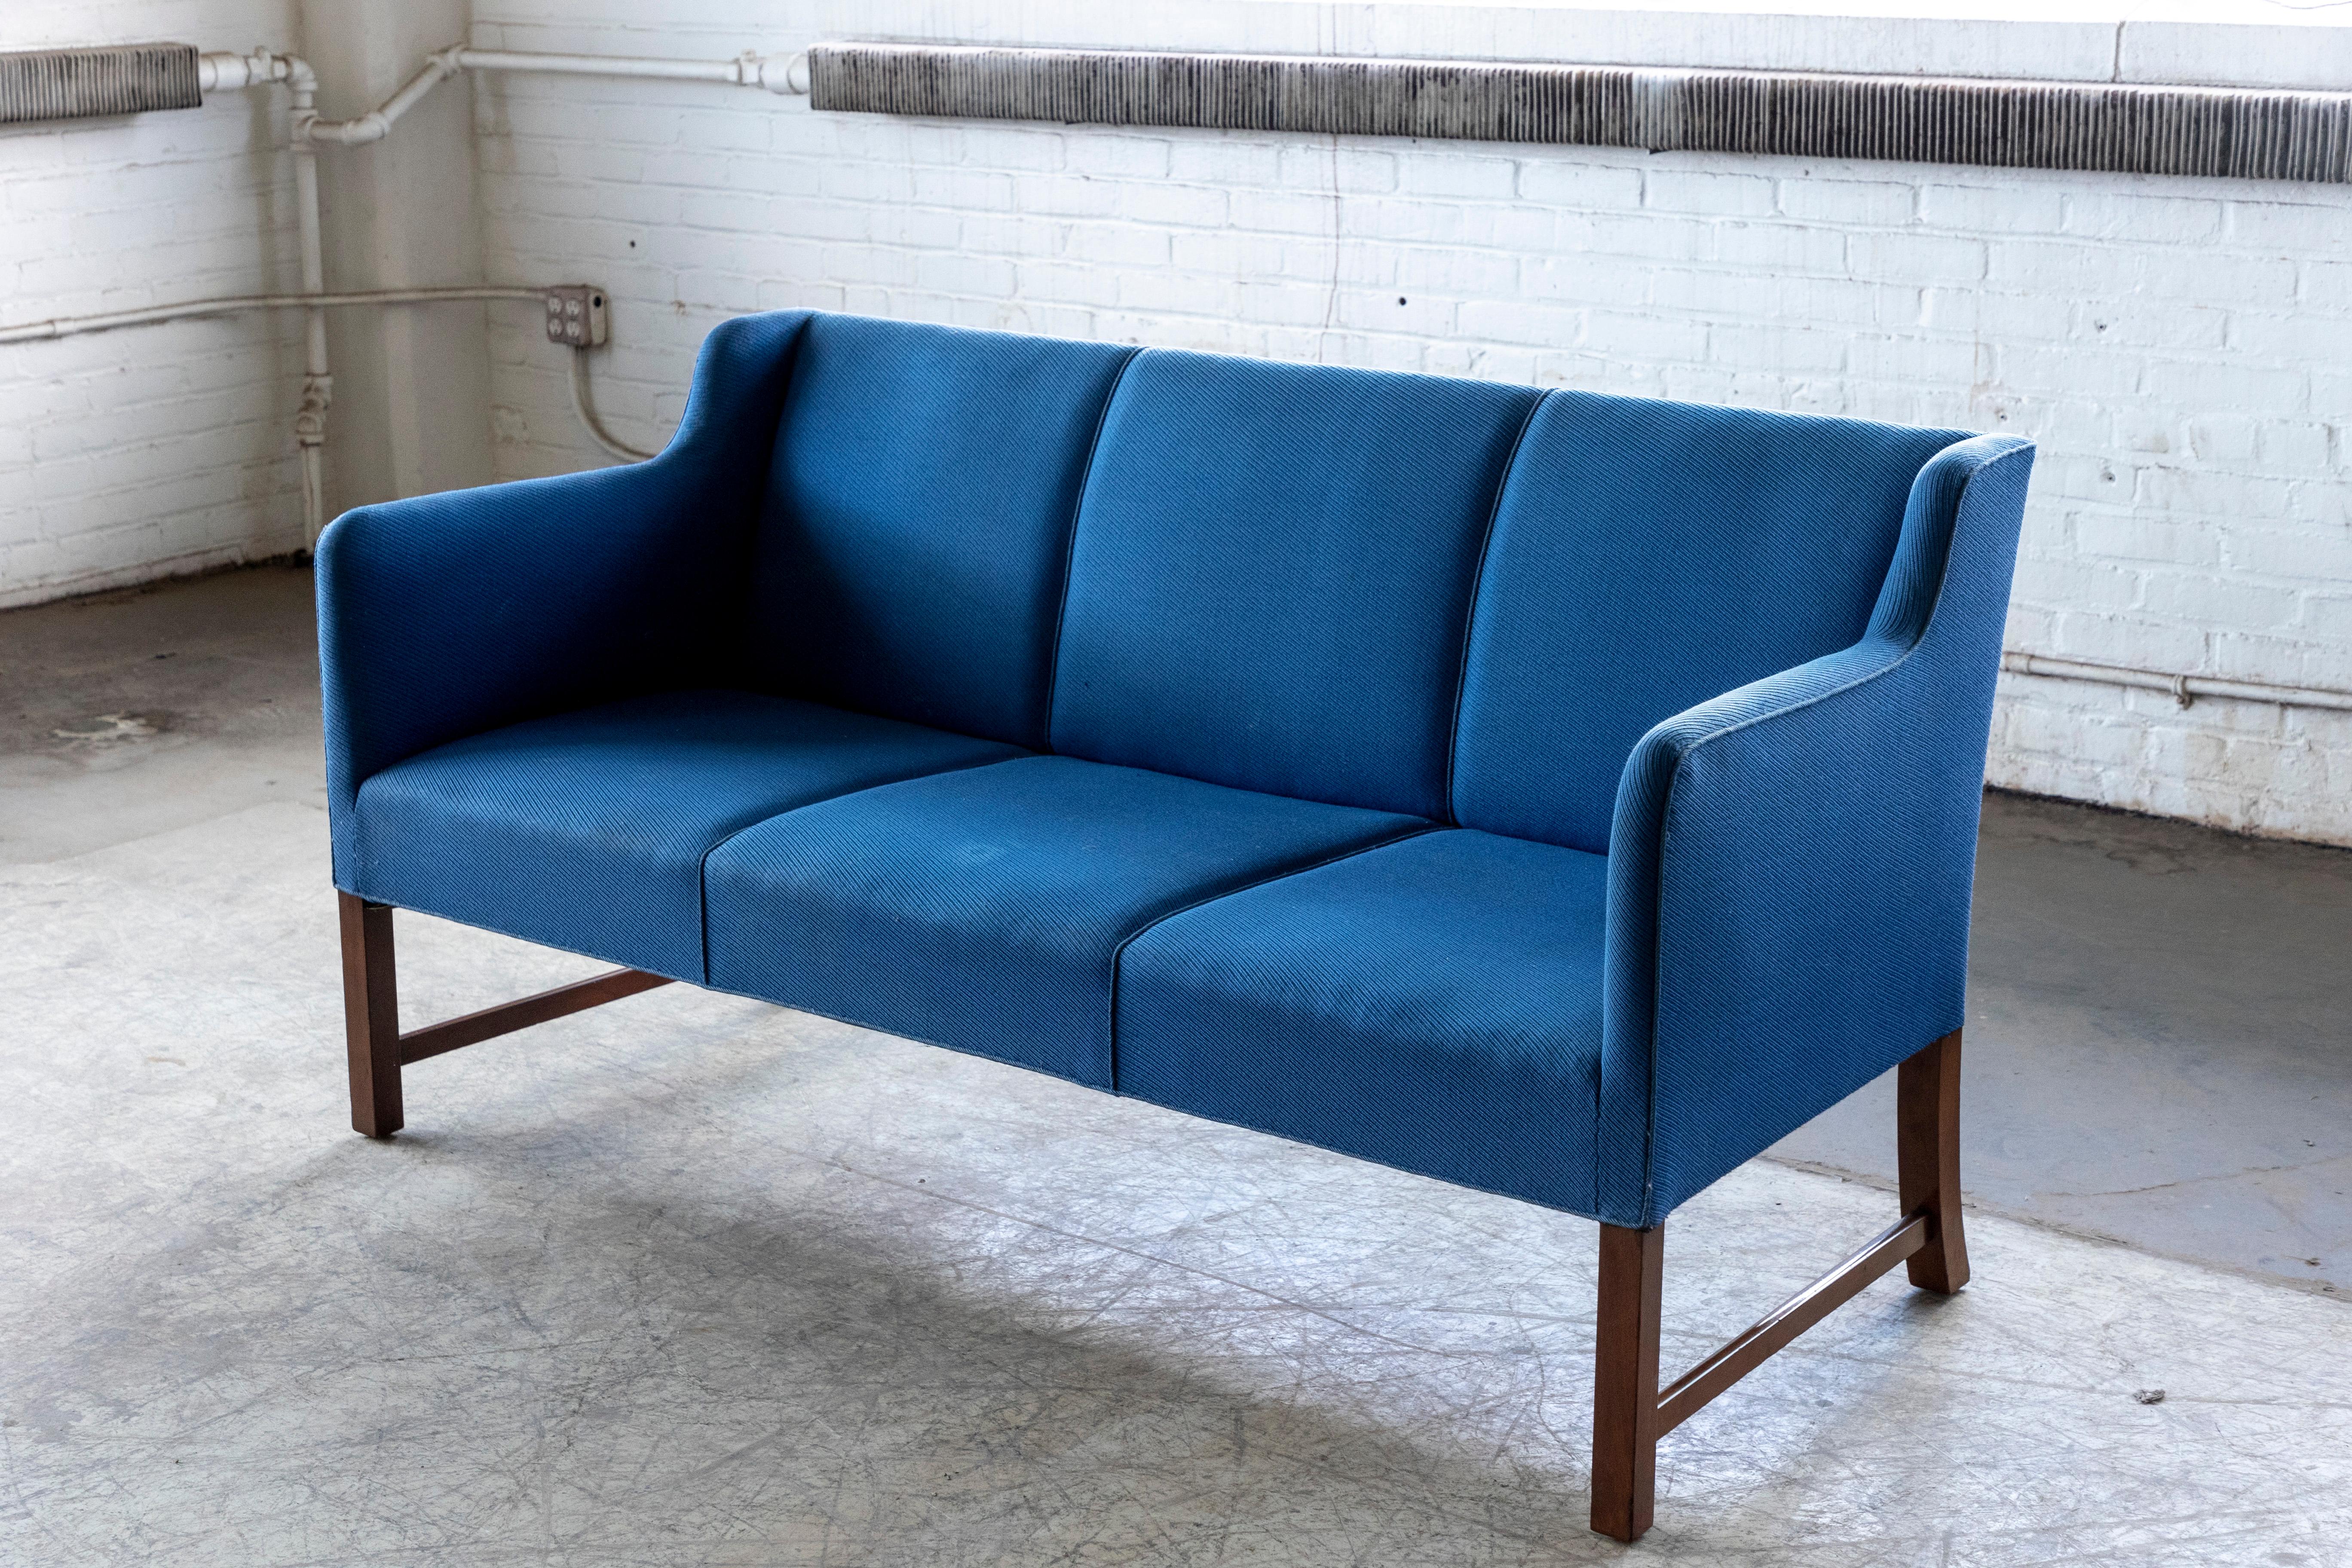 Wunderschönes und einzigartiges Sofa, das an die berühmten Entwürfe von Kaare Klint und Frits Henningsen angelehnt ist. Das Sofa ist höchstwahrscheinlich von Ole Wanscher, der mehrere Zollstücke dieser Art herstellte, aber wir können den Hersteller